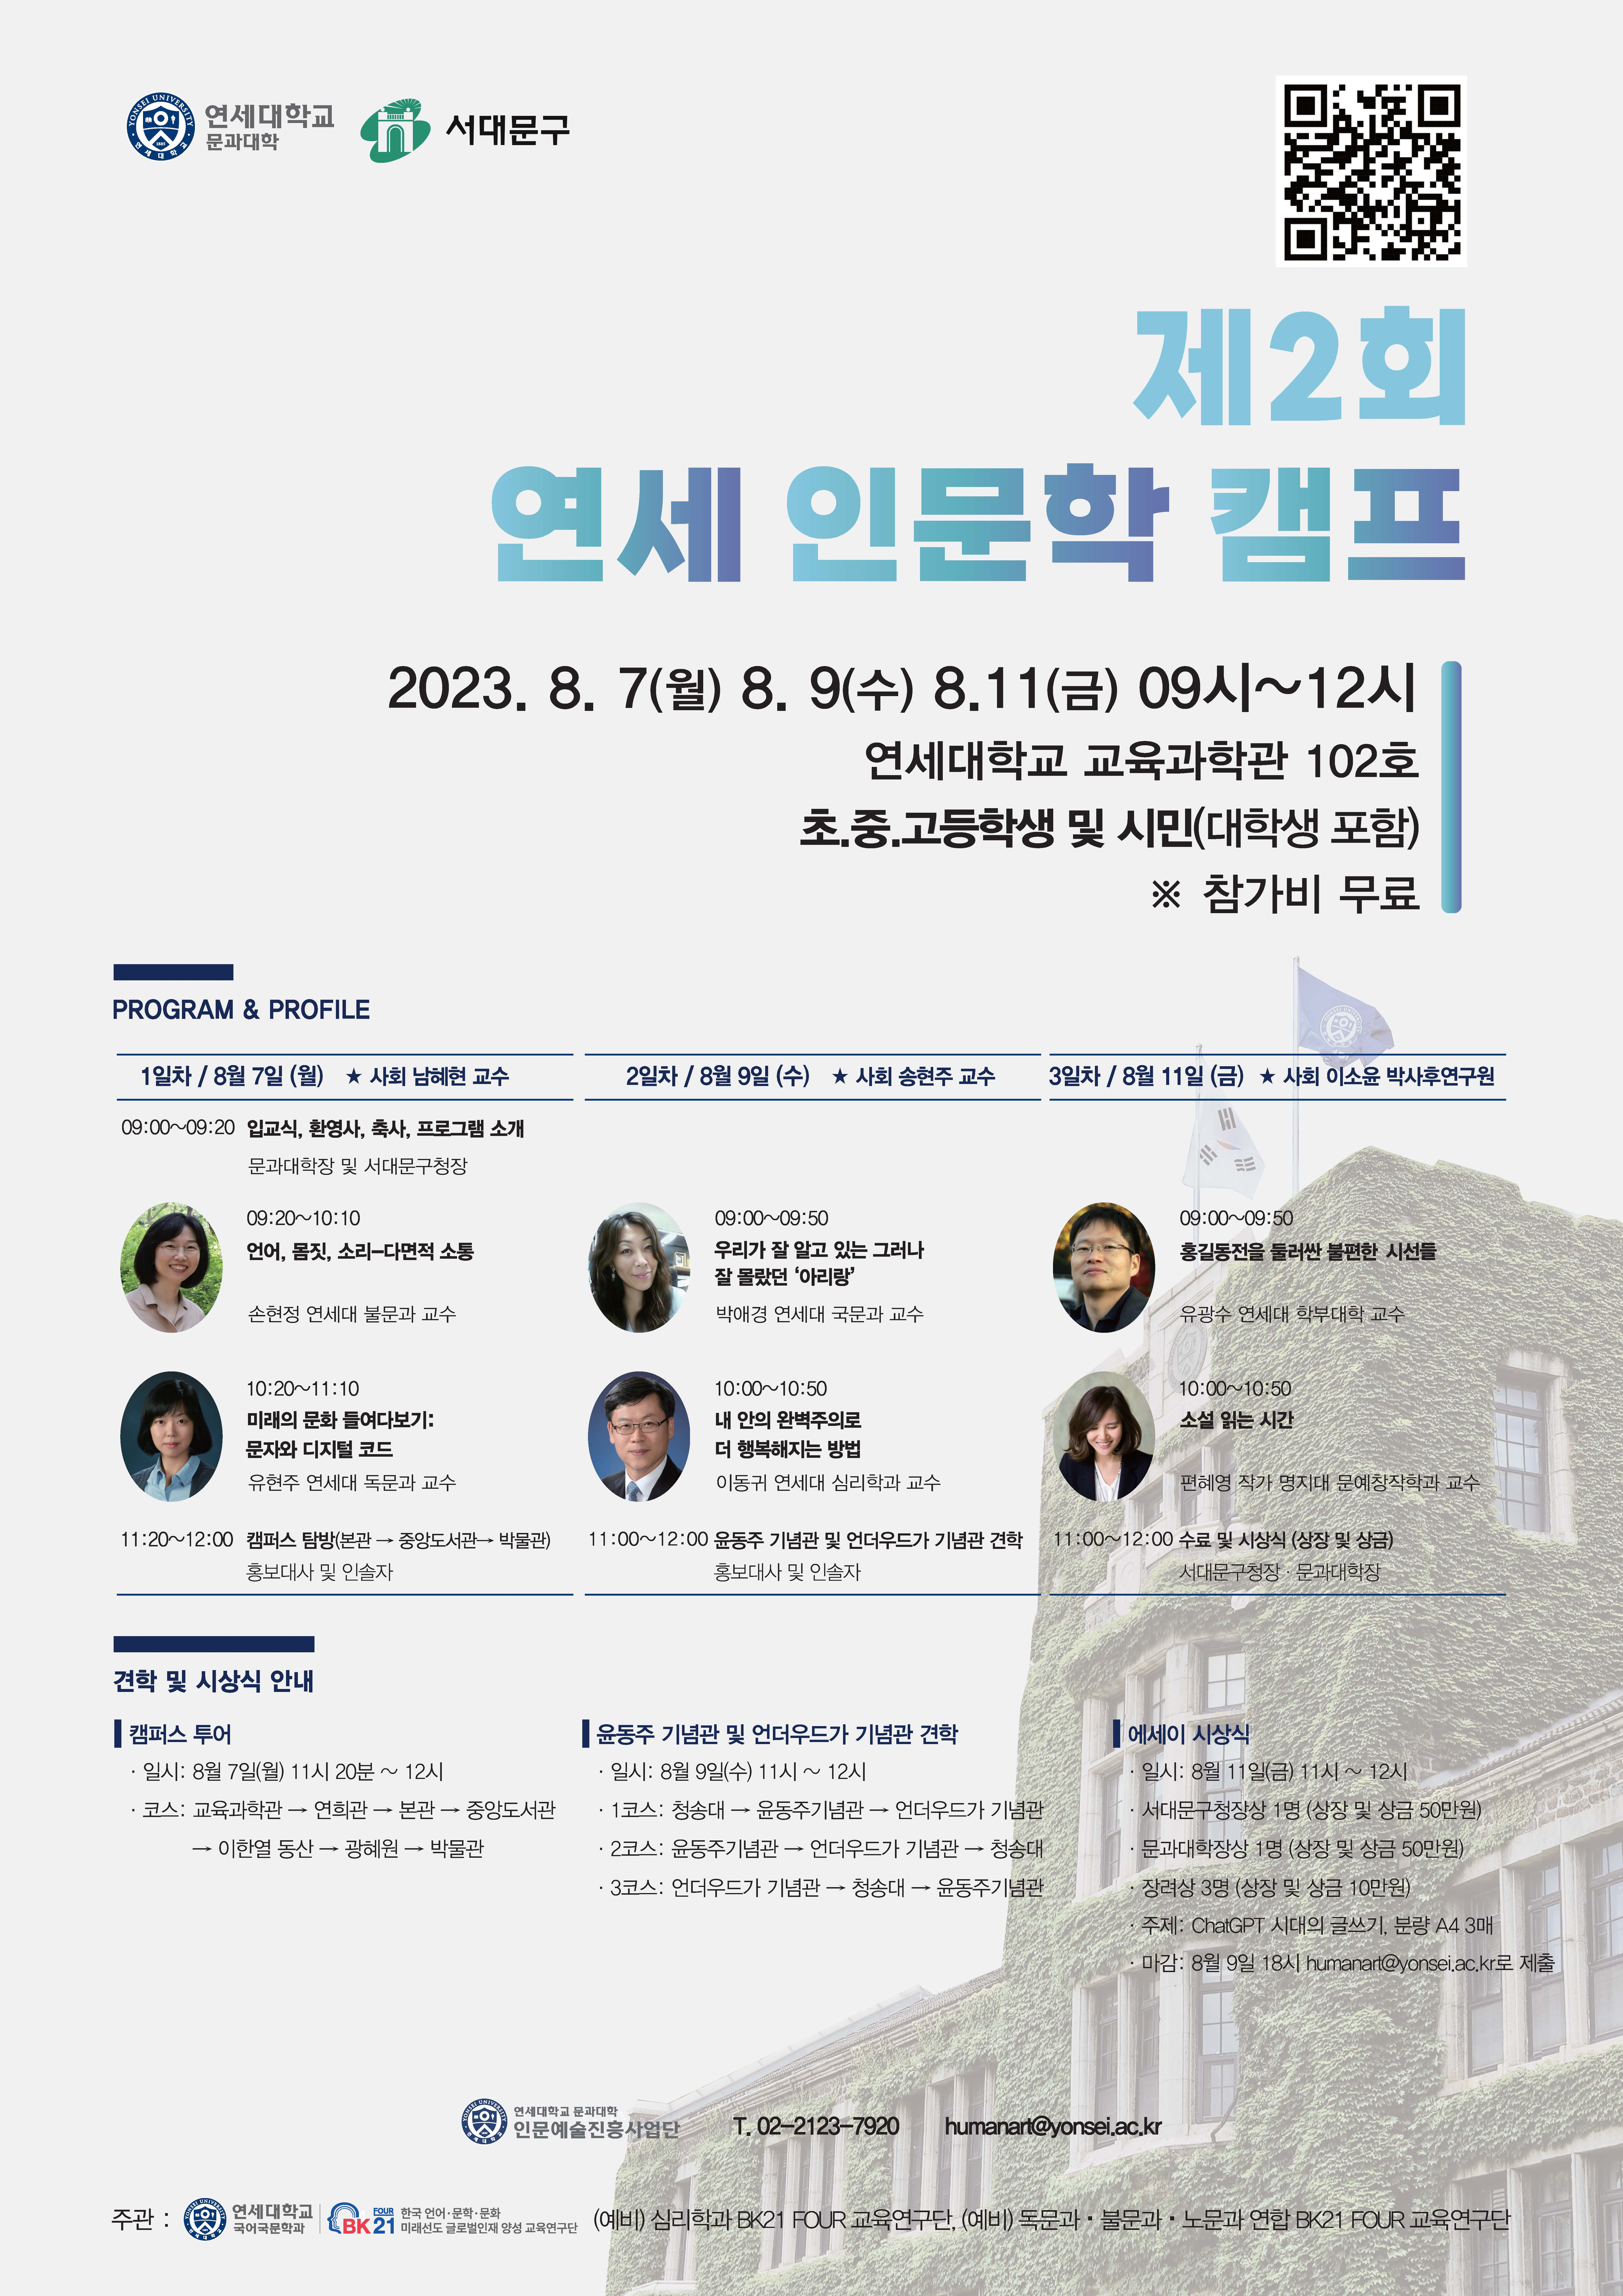 [2023. 7. 26.] 연세대 문과대학, ‘제2회 연세 인문학 캠프’ 개최